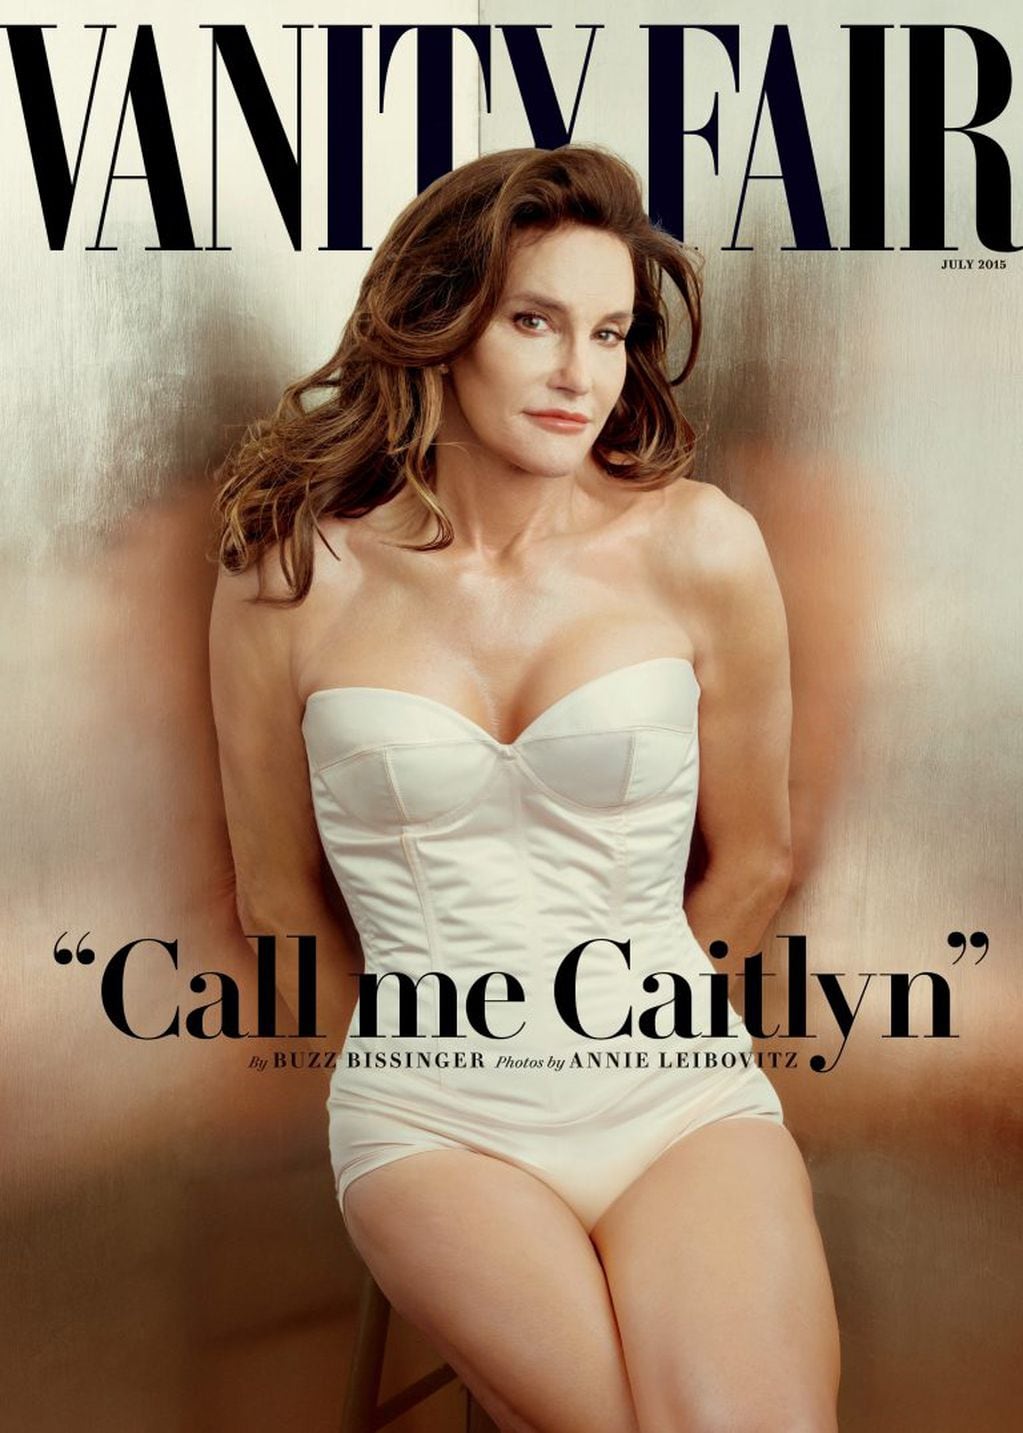 La presentación de Caitlyn Jenner en la portada de Vanity Fair. (Foto: AP)